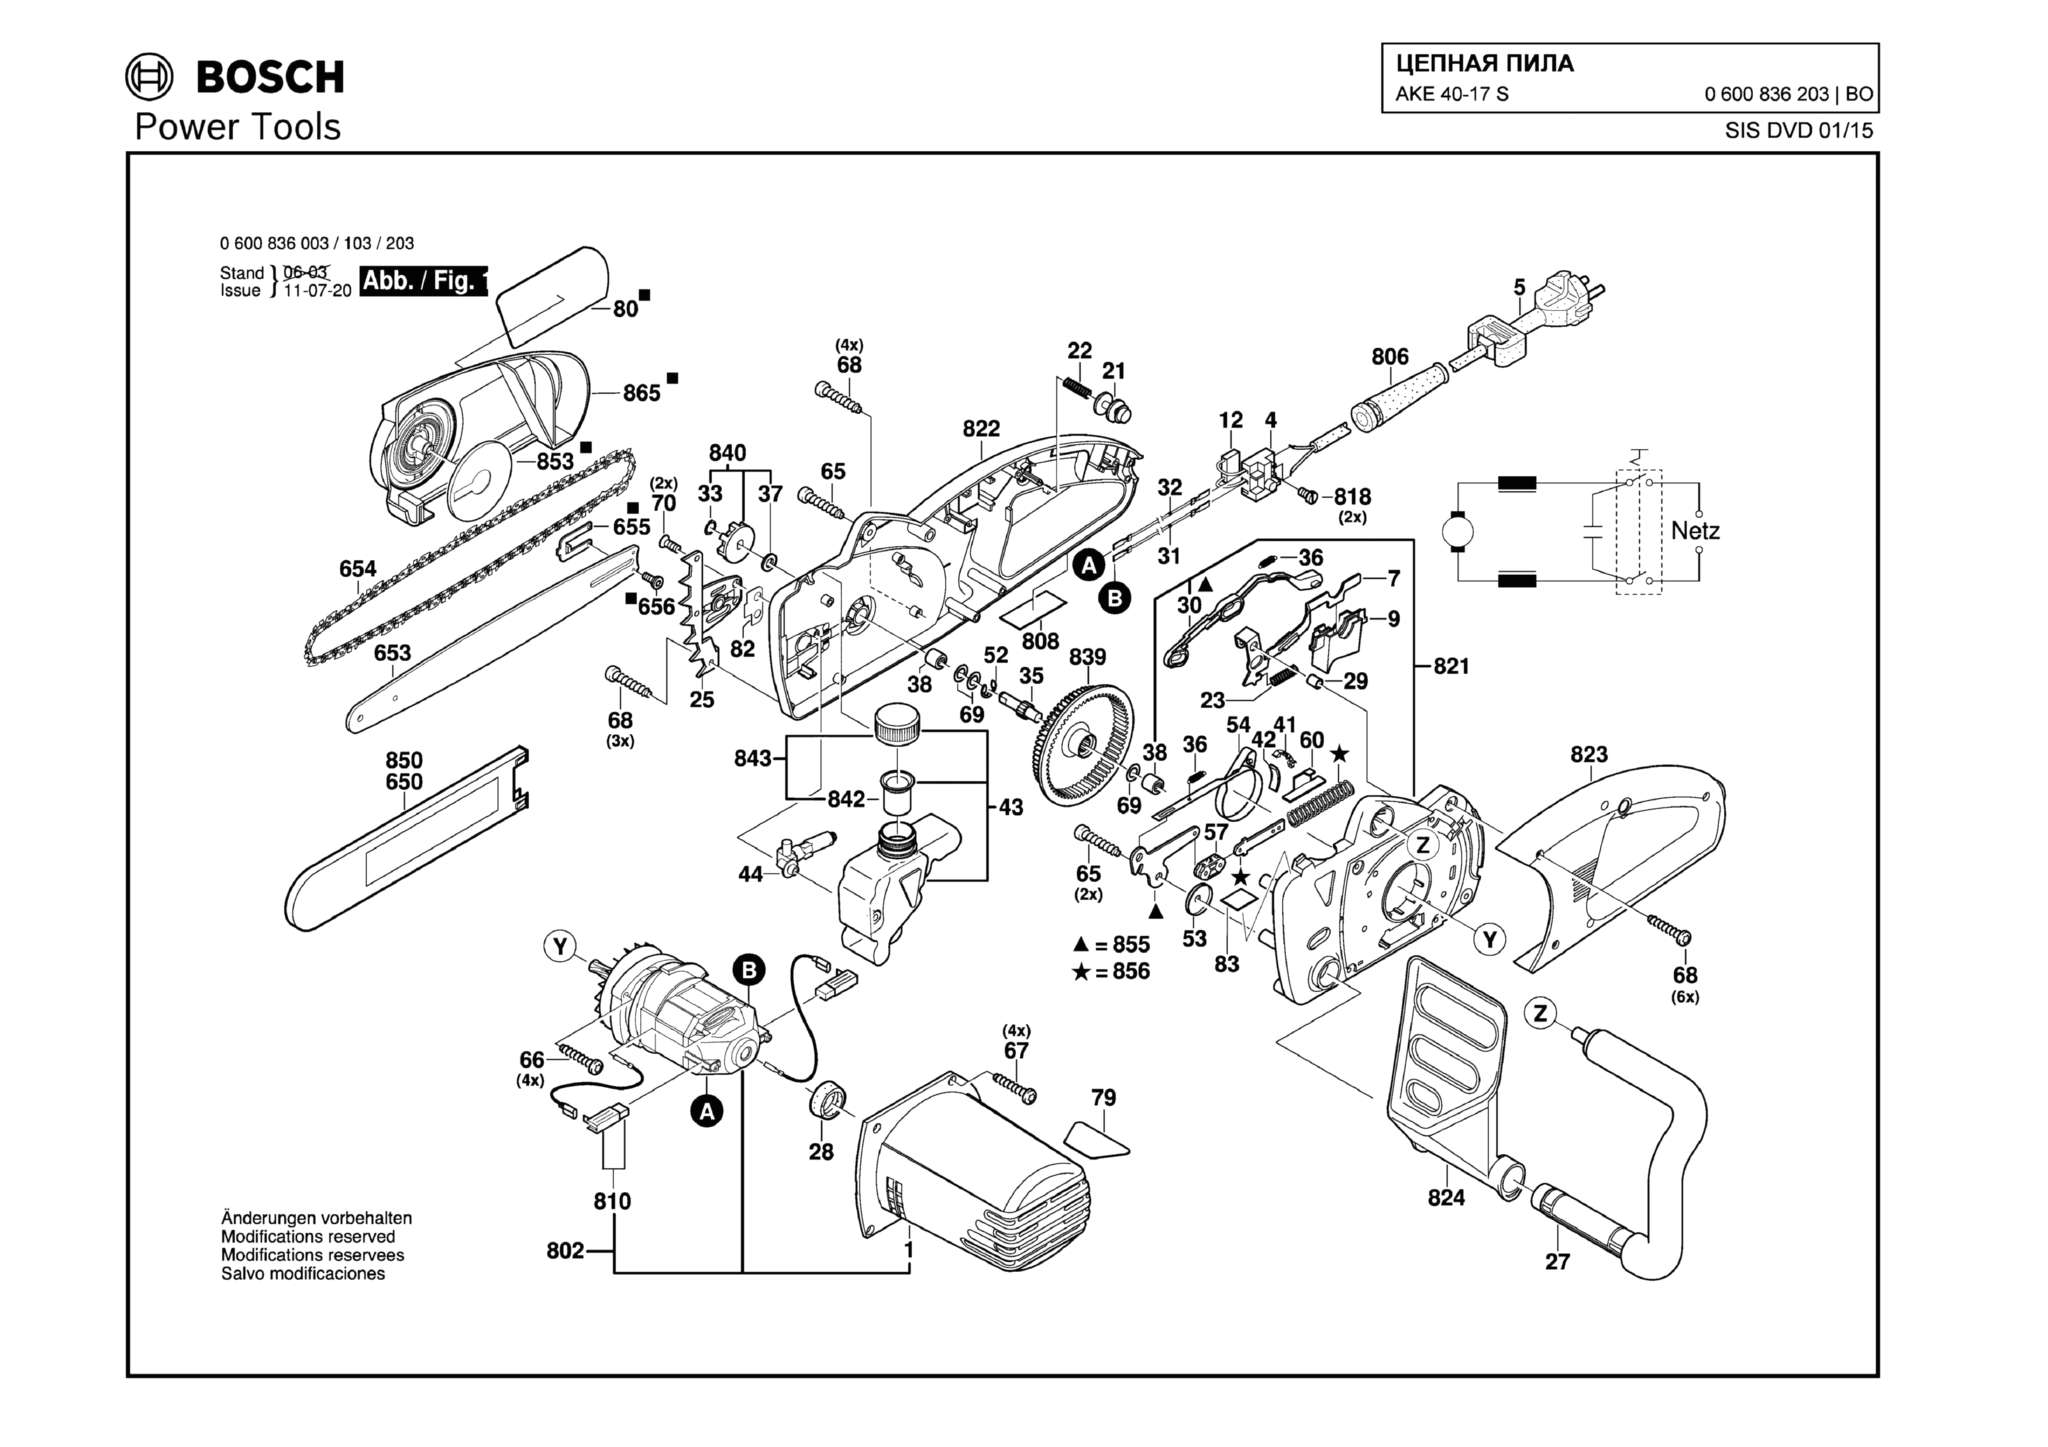 Запчасти, схема и деталировка Bosch AKE 40-17 S (ТИП 0600836203)